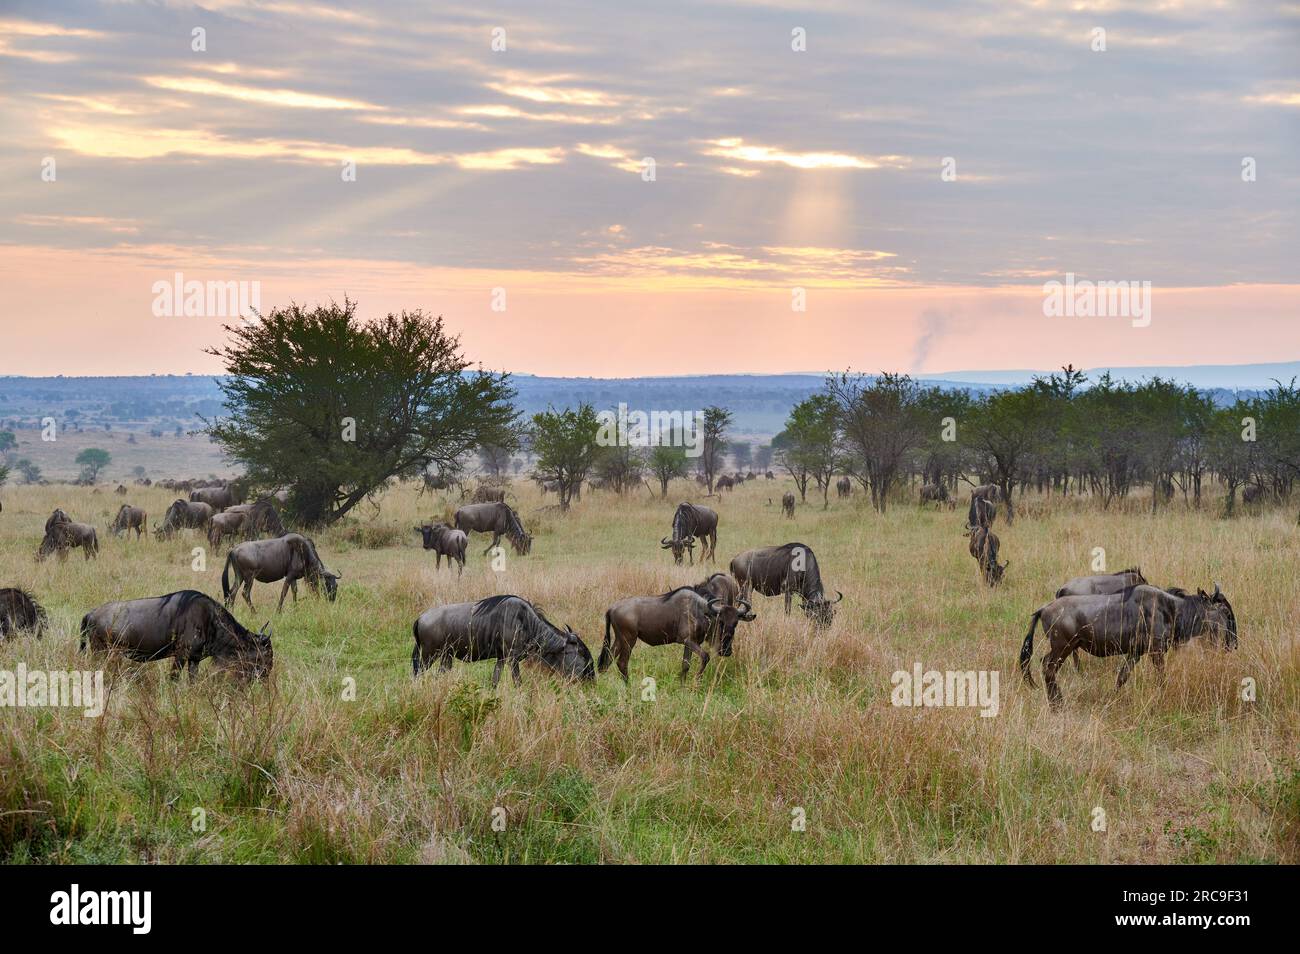 Weißbartgnus (Connochaetes mearnsi) im Sonnenuntergang auf der grossen Migration durch den Serengeti National Park, Tansania, Afrika |blue wildebeest Stock Photo